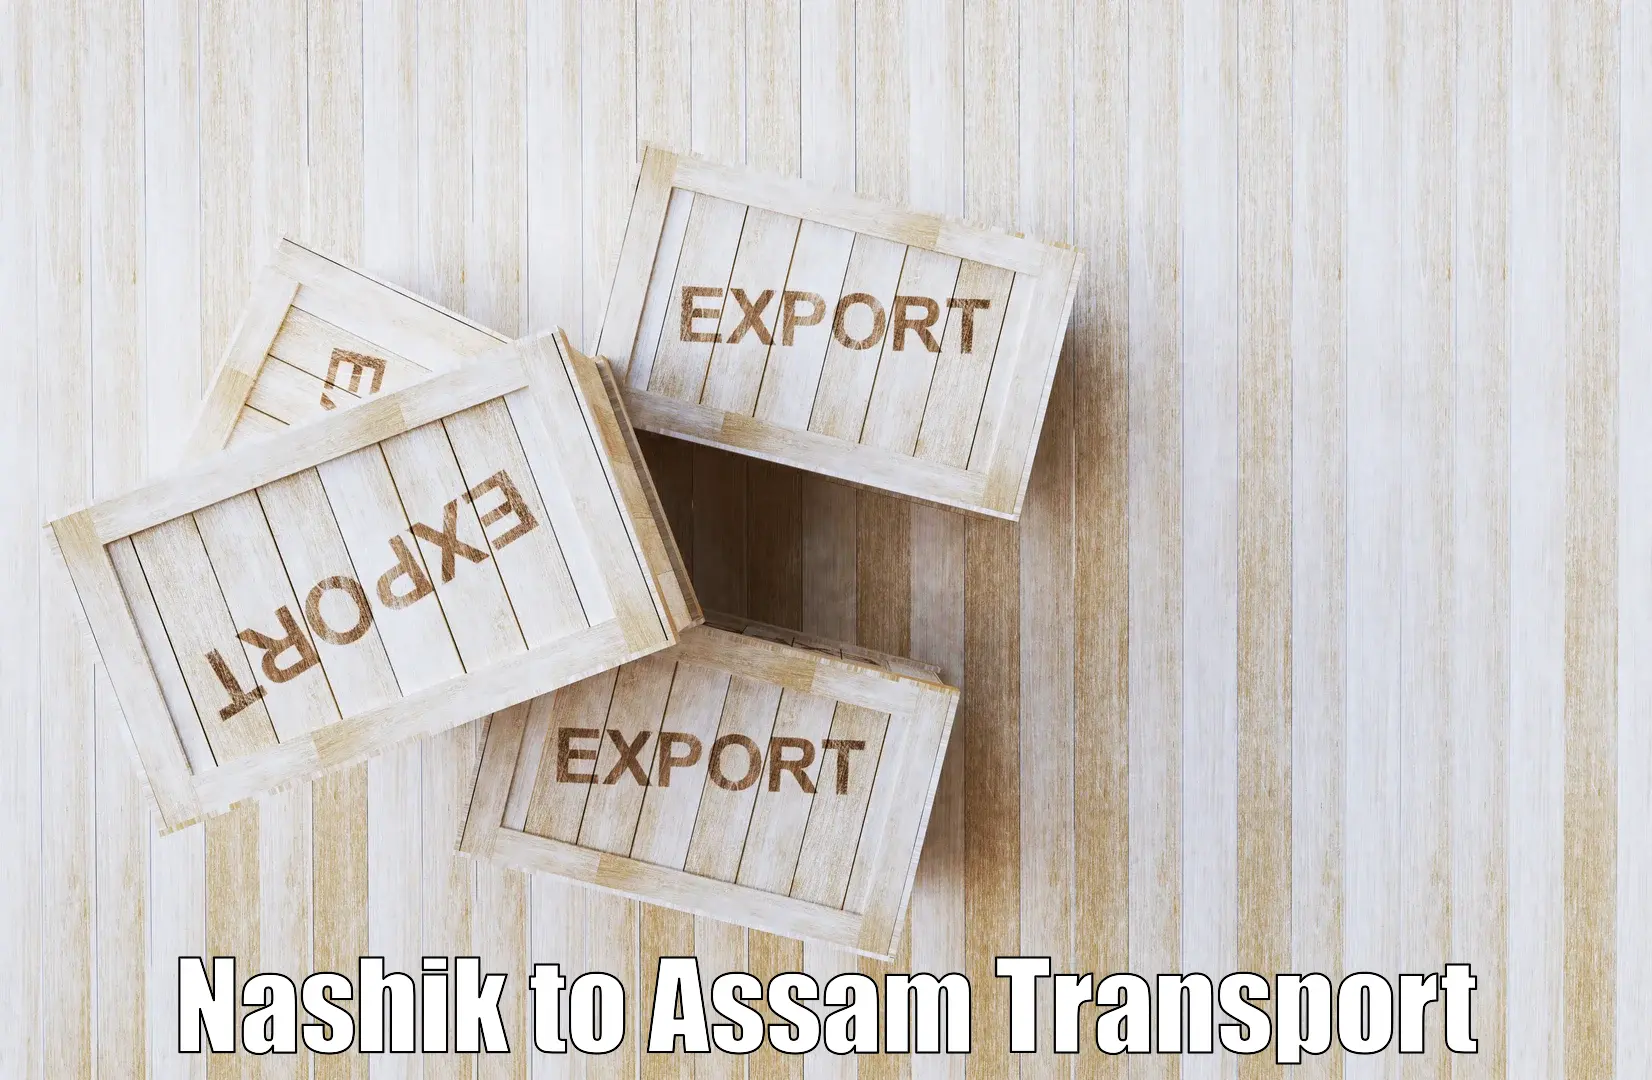 Online transport booking Nashik to Sivasagar